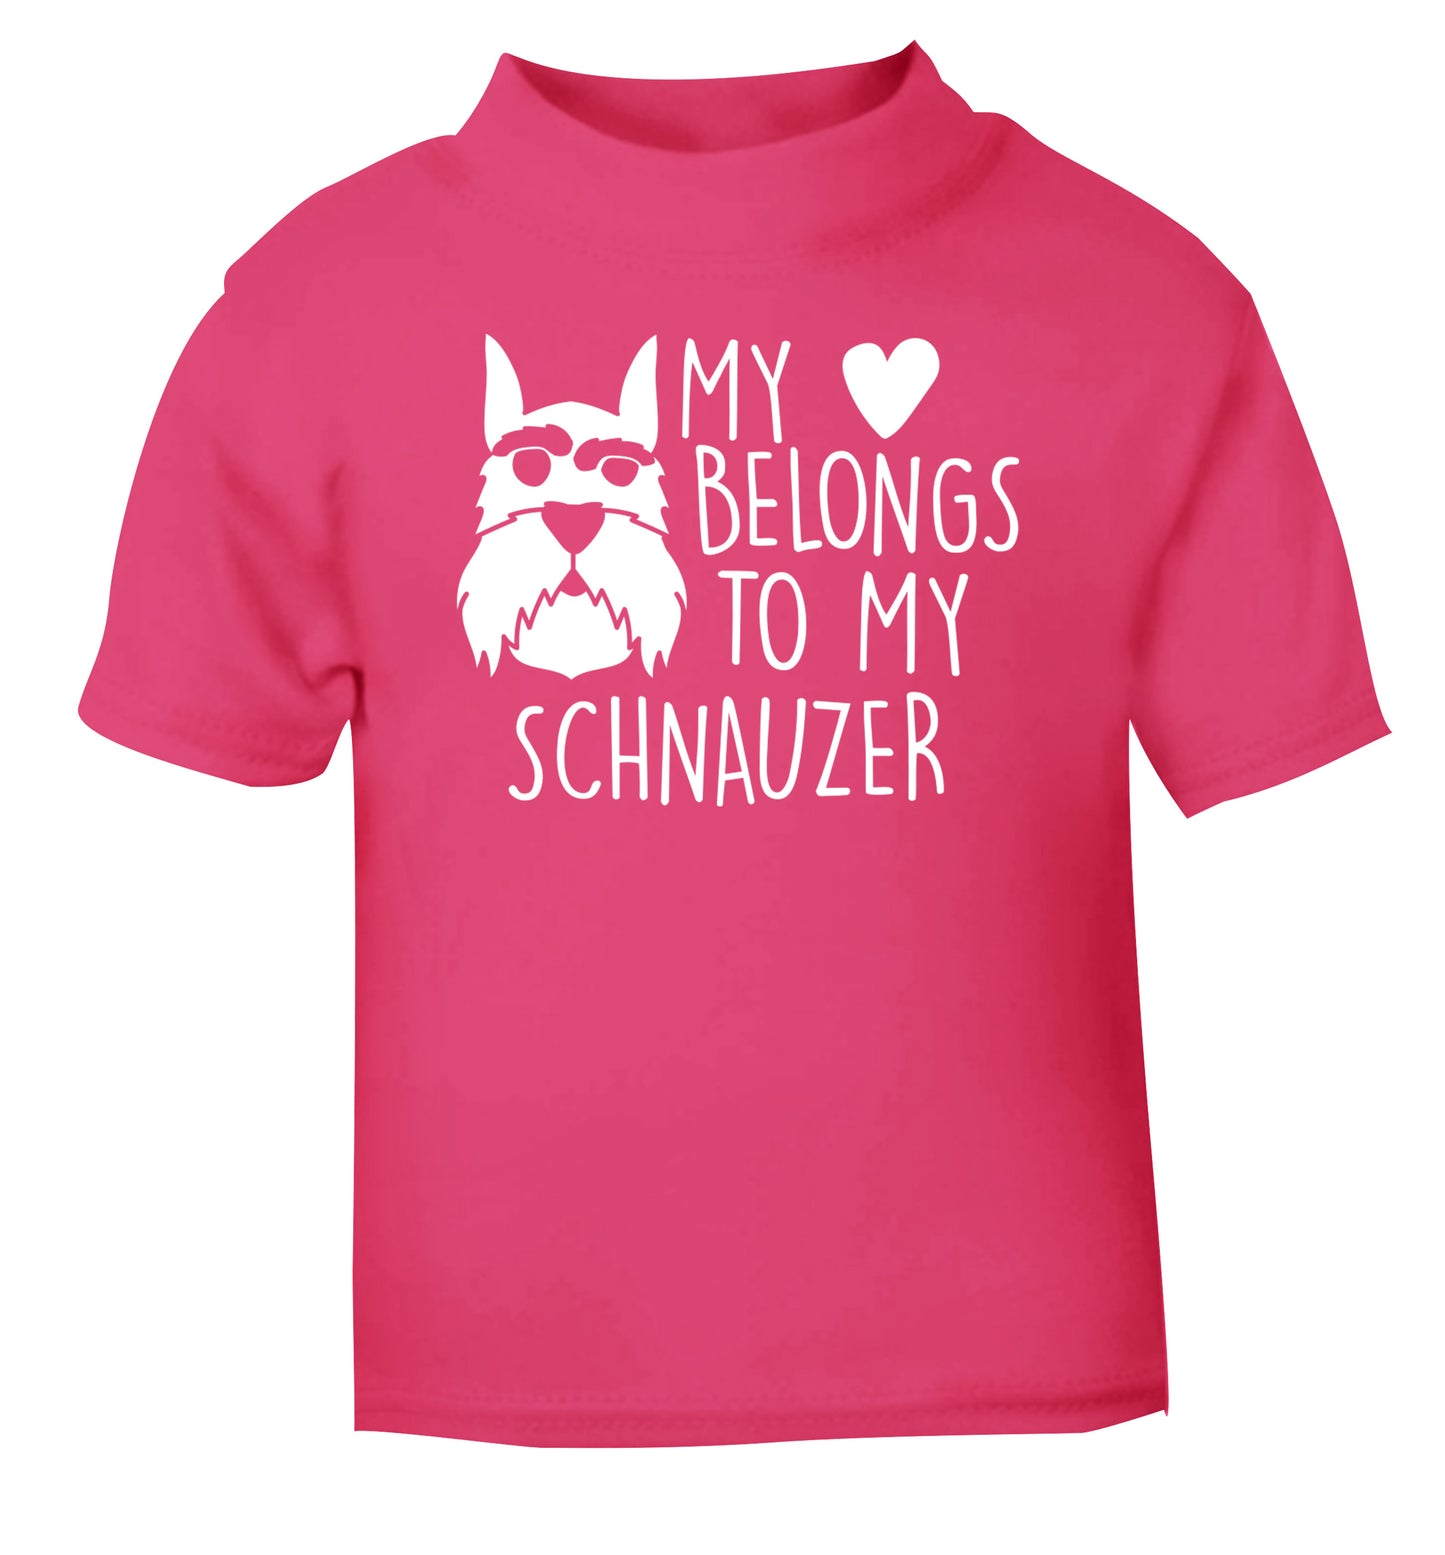 My heart belongs to my schnauzer pink Baby Toddler Tshirt 2 Years